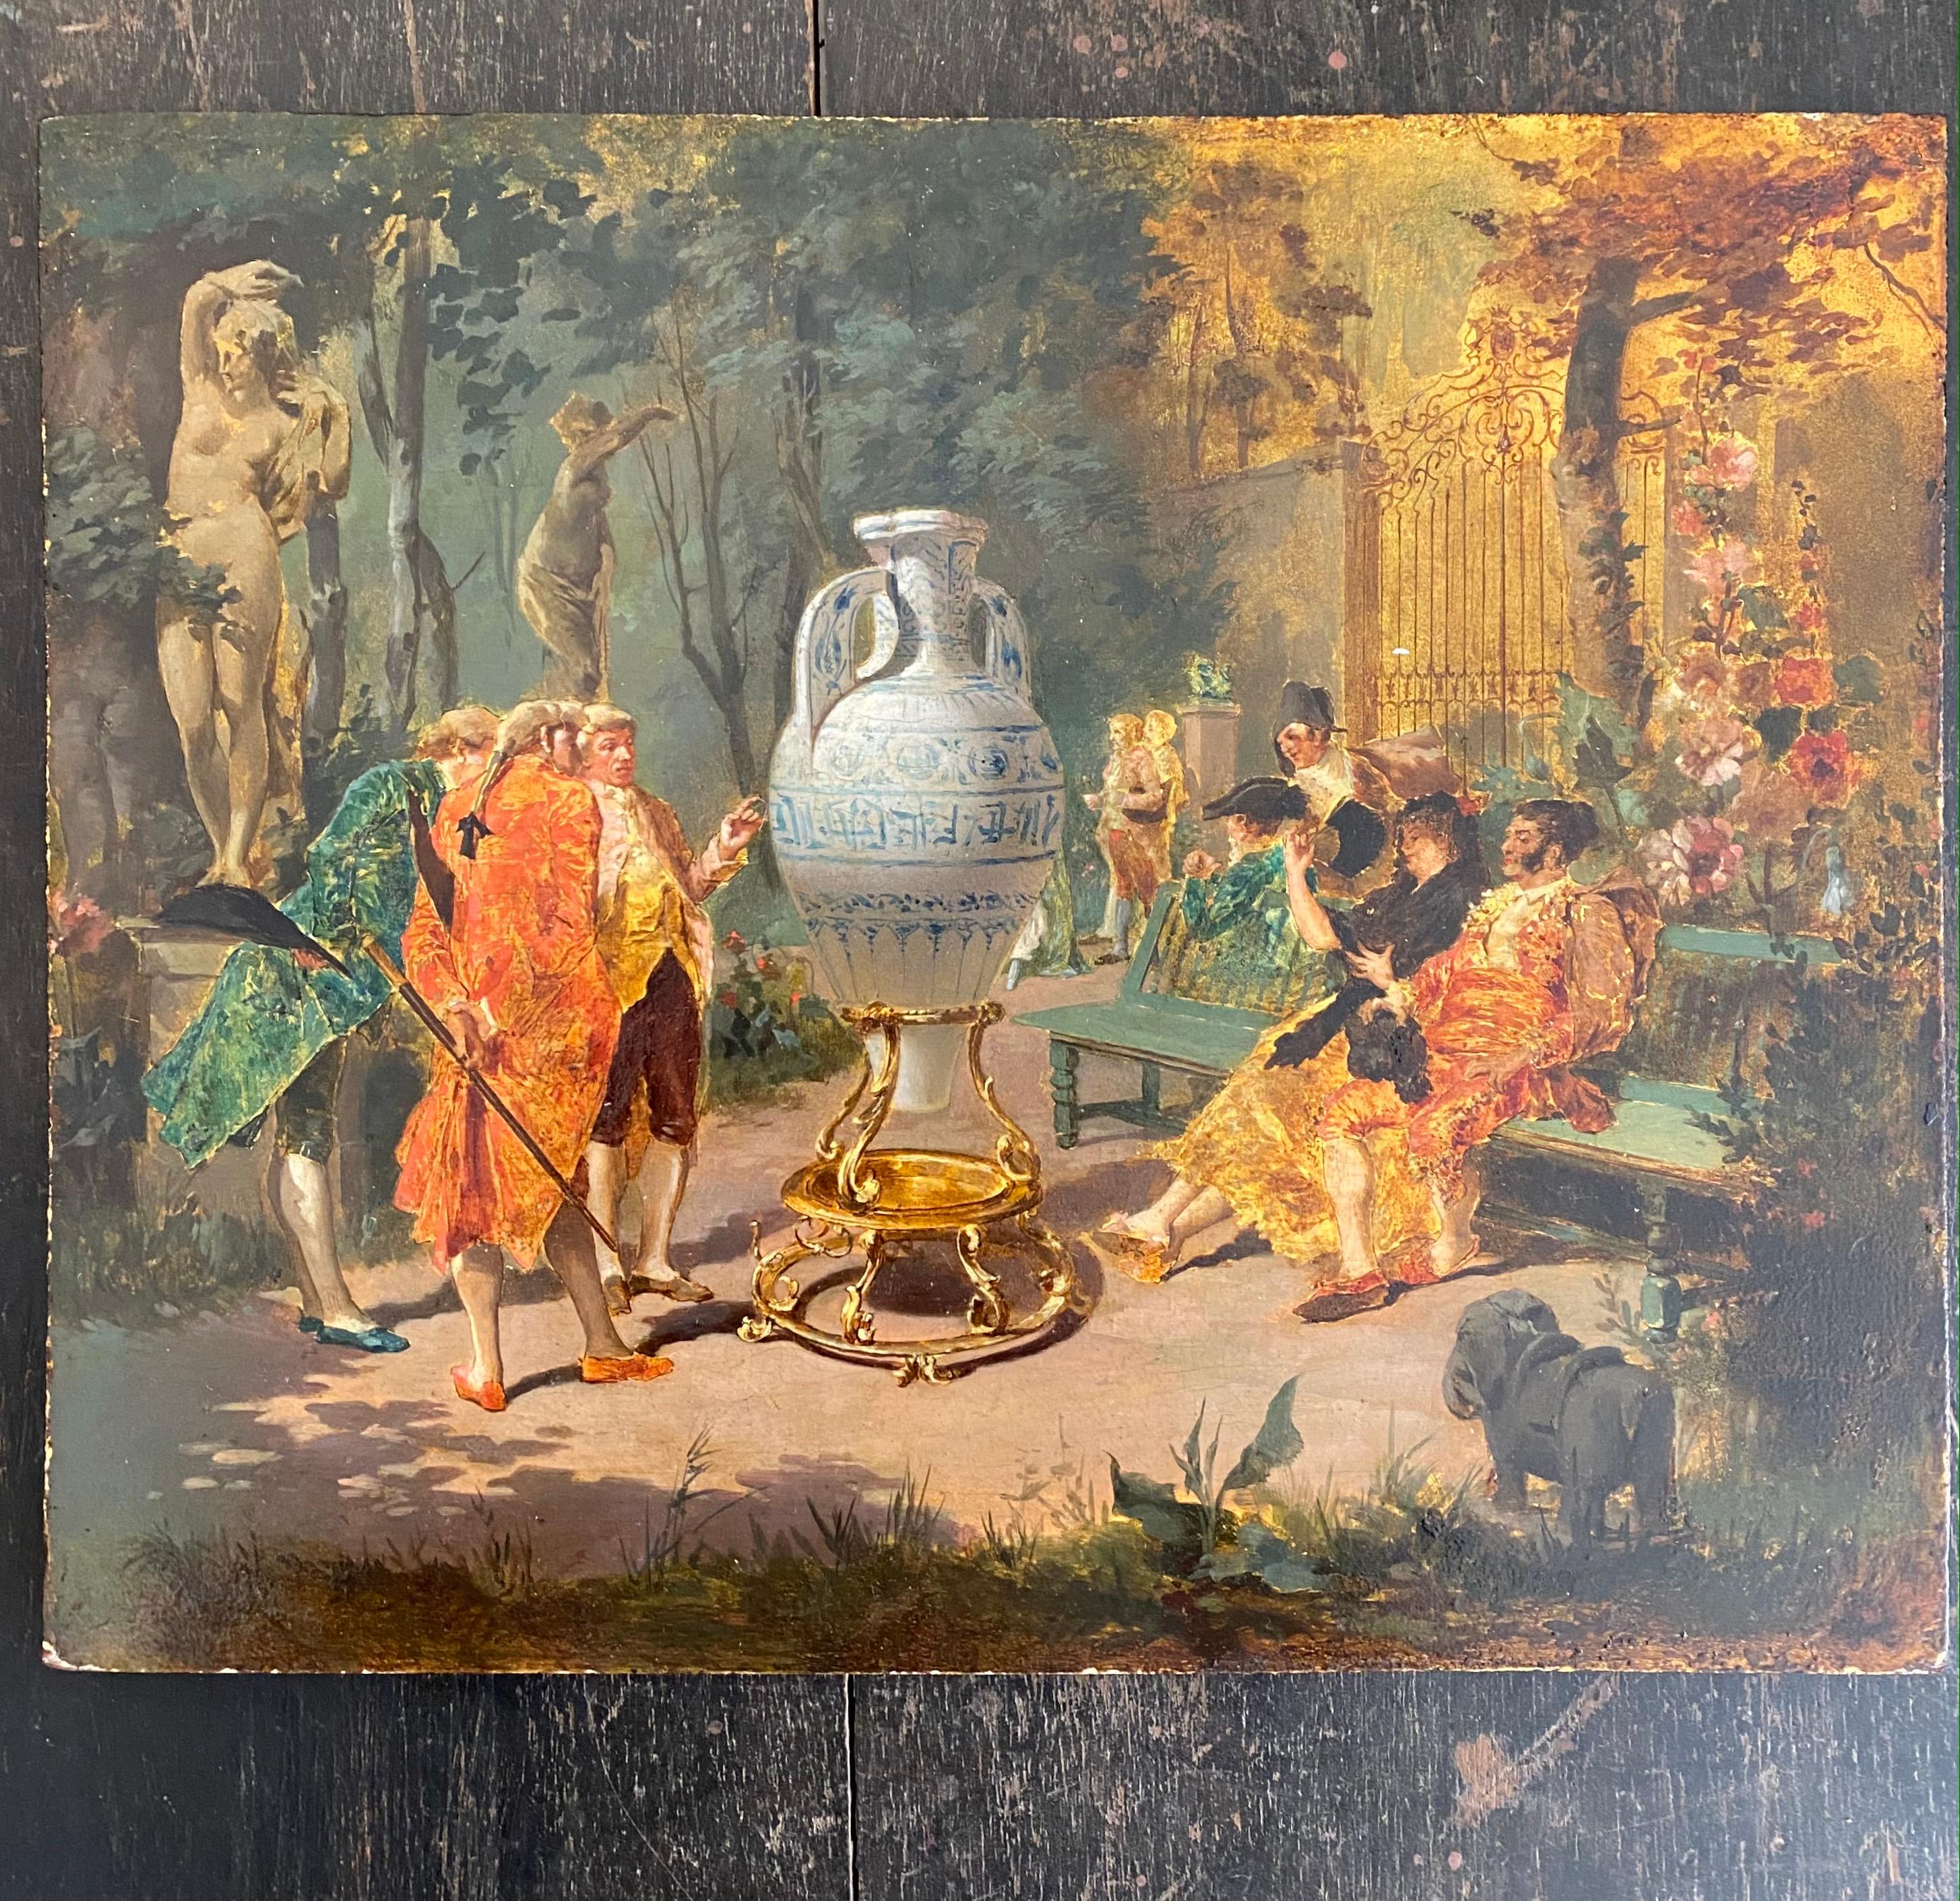 Eugène Millet expose au Salon de Paris, à partir de 1866, des scènes de genre et des natures mortes. Il est probablement l'artiste à qui la manufacture Vieillard a demandé les splendides modèles du service des grands oiseaux. Notre scène historique,